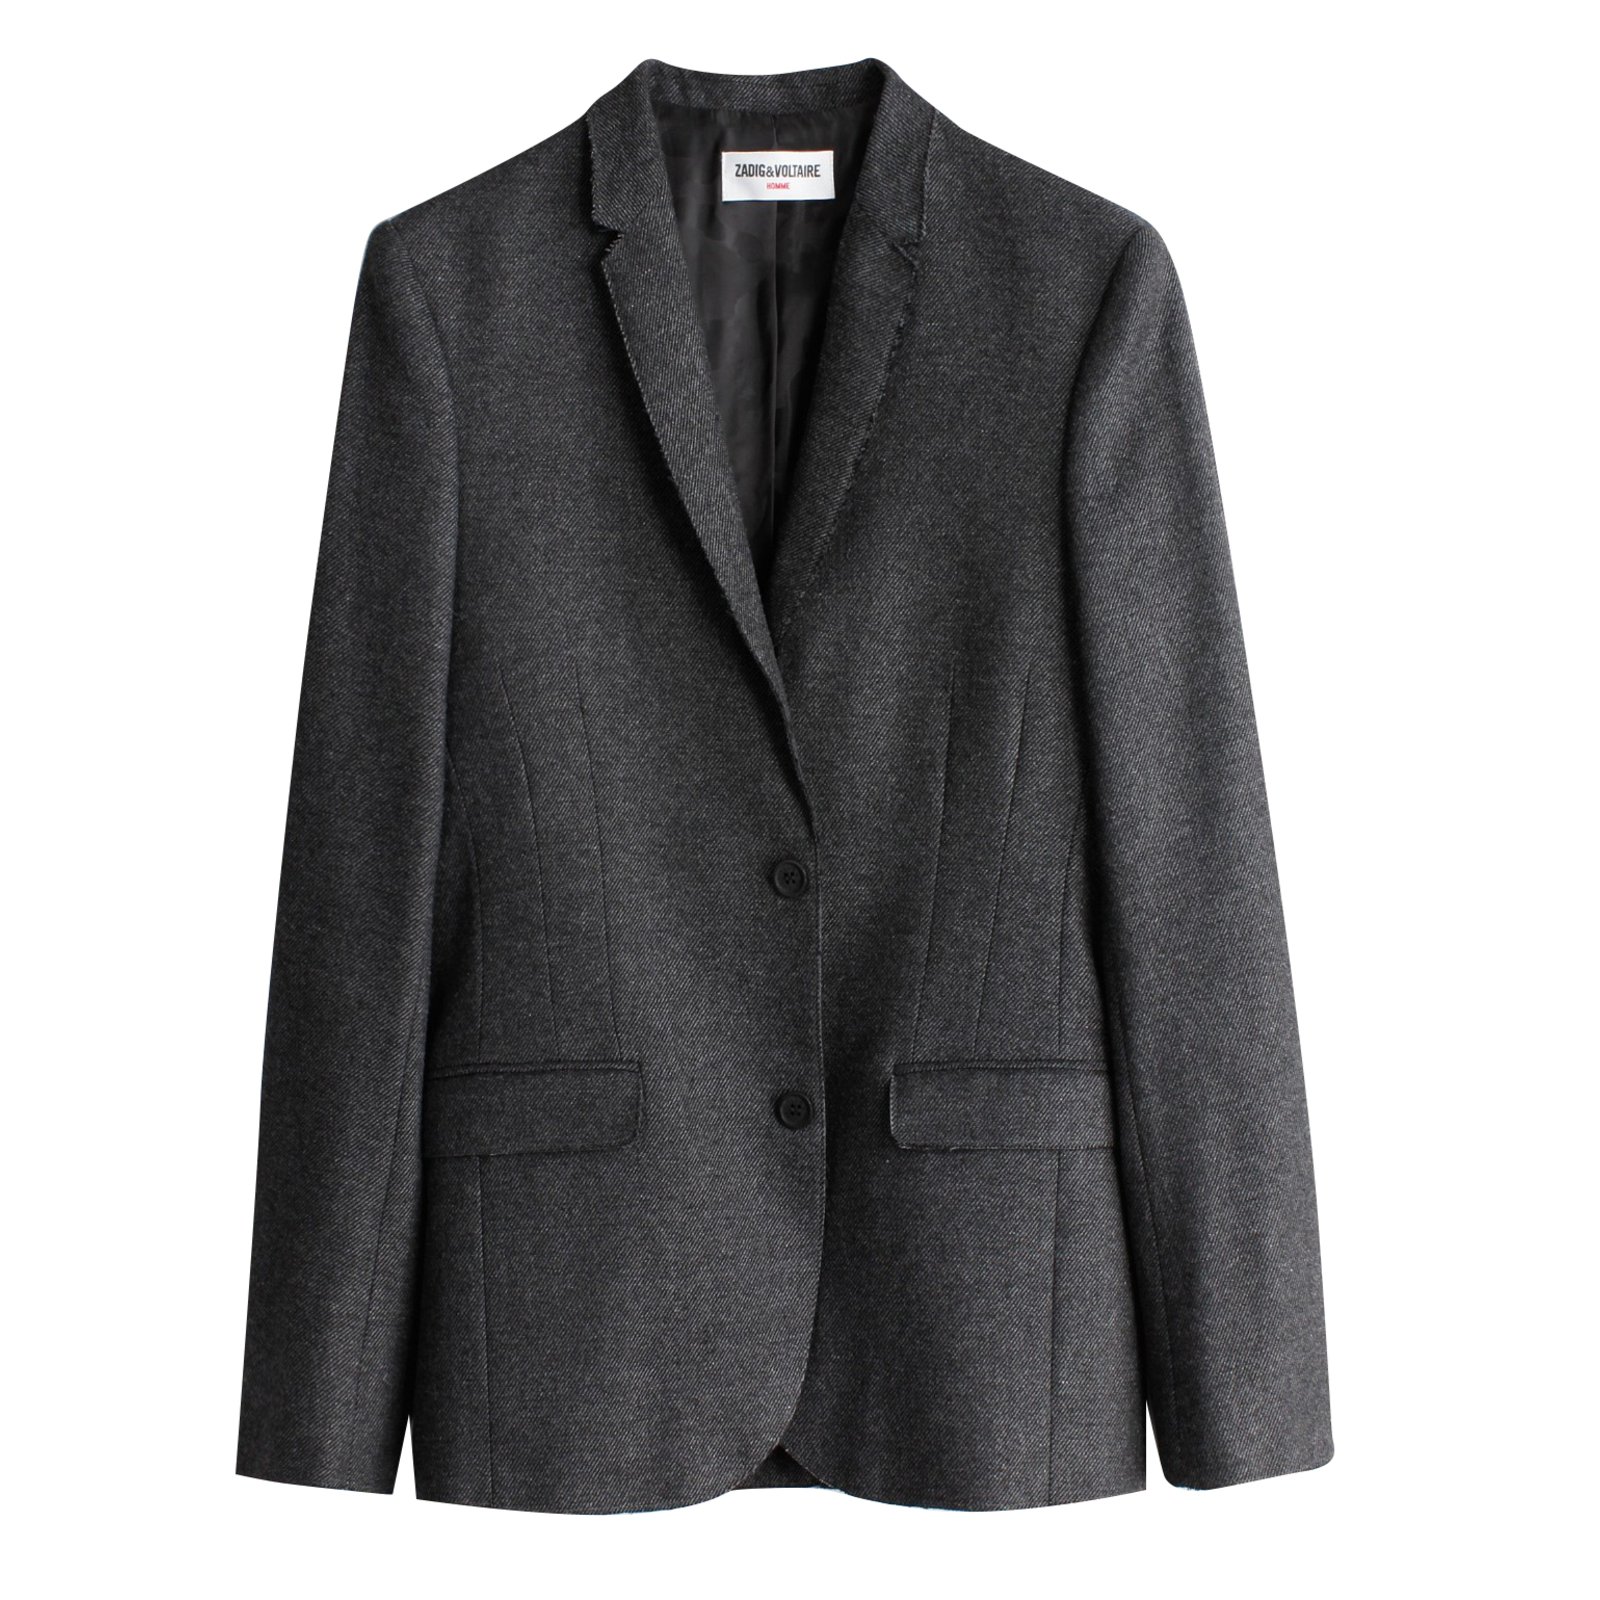 Zadig & Voltaire Blazers Jackets Dark grey Polyester Wool Polyamide ref ...